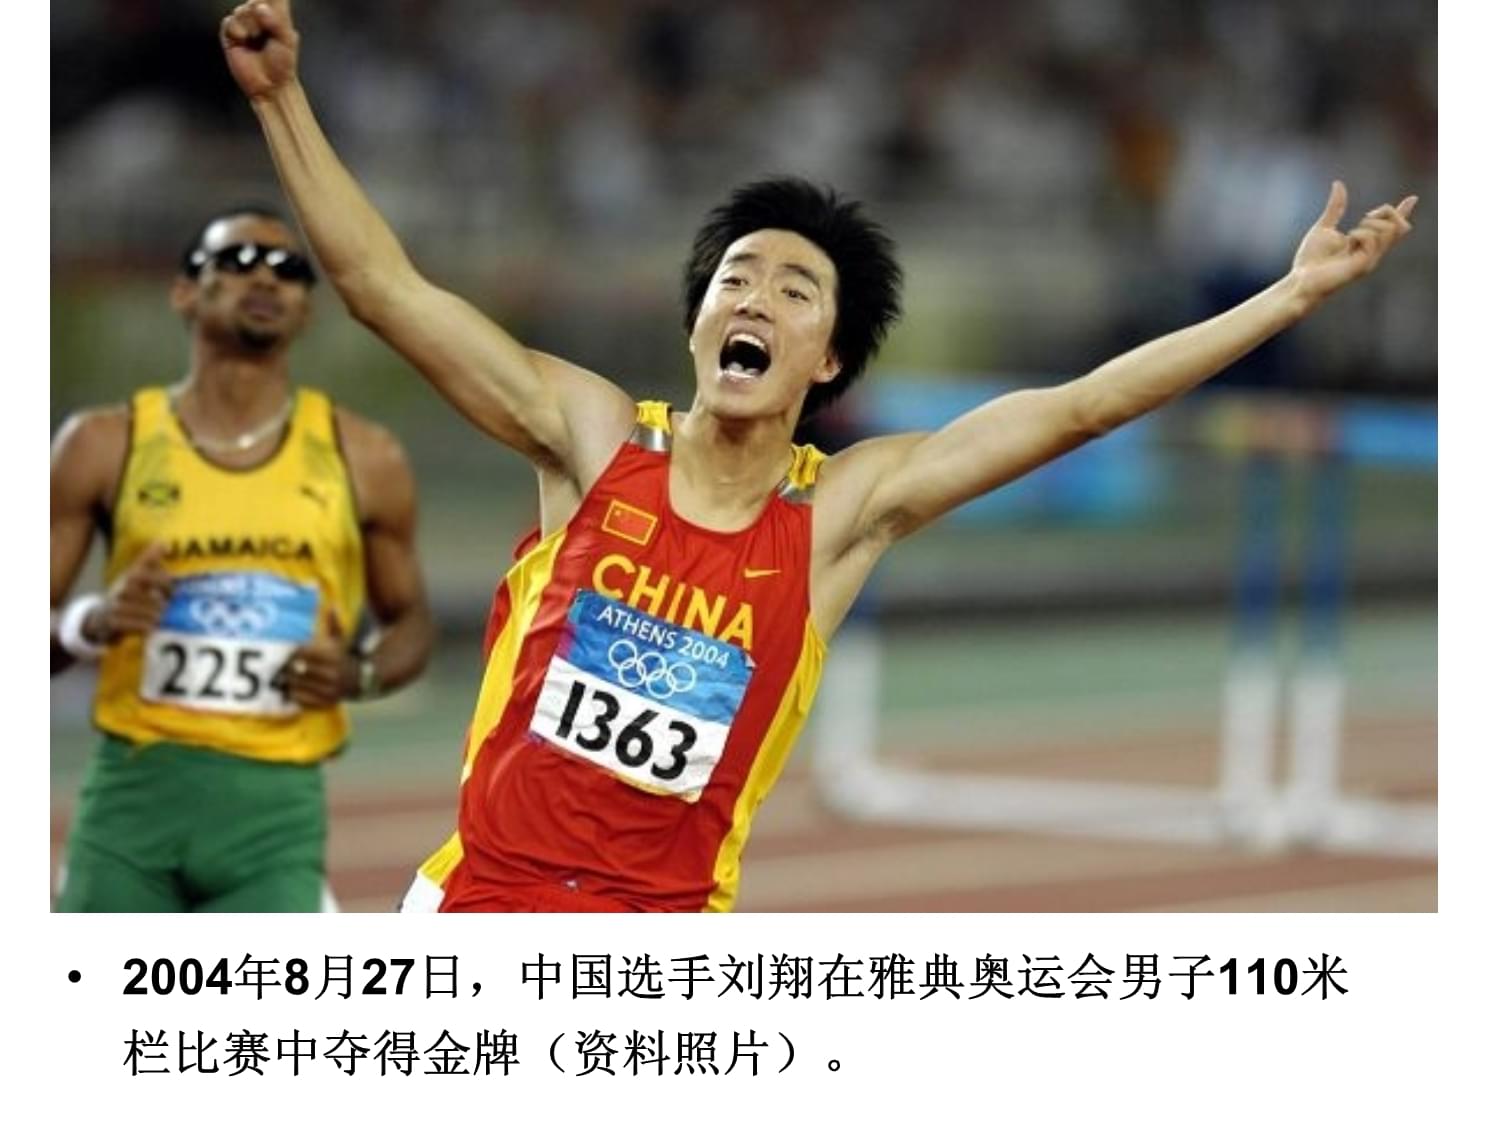 15年后再看刘翔：因比赛失利被质疑假摔，他到底做错了什么？